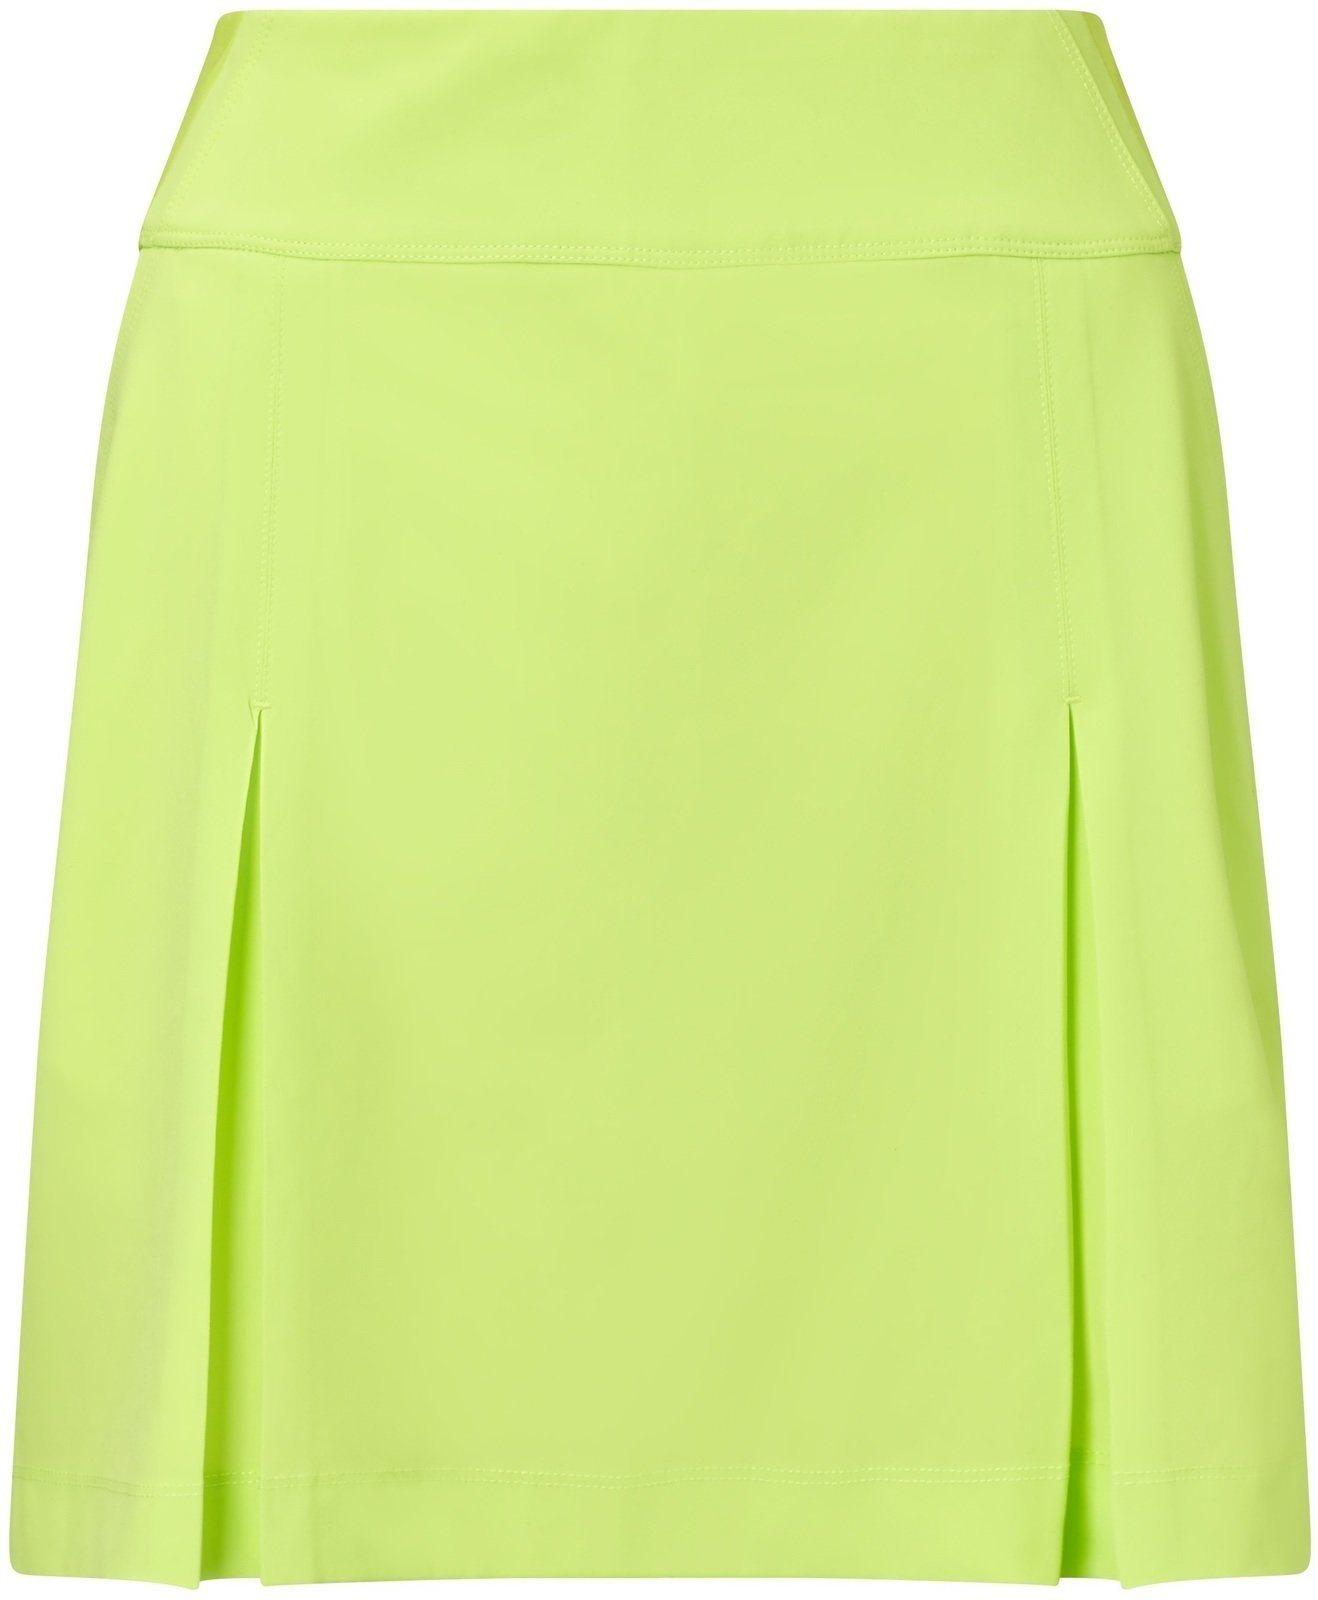 Skirt / Dress Callaway 18 All Day Skort Sharp Green XS Womens